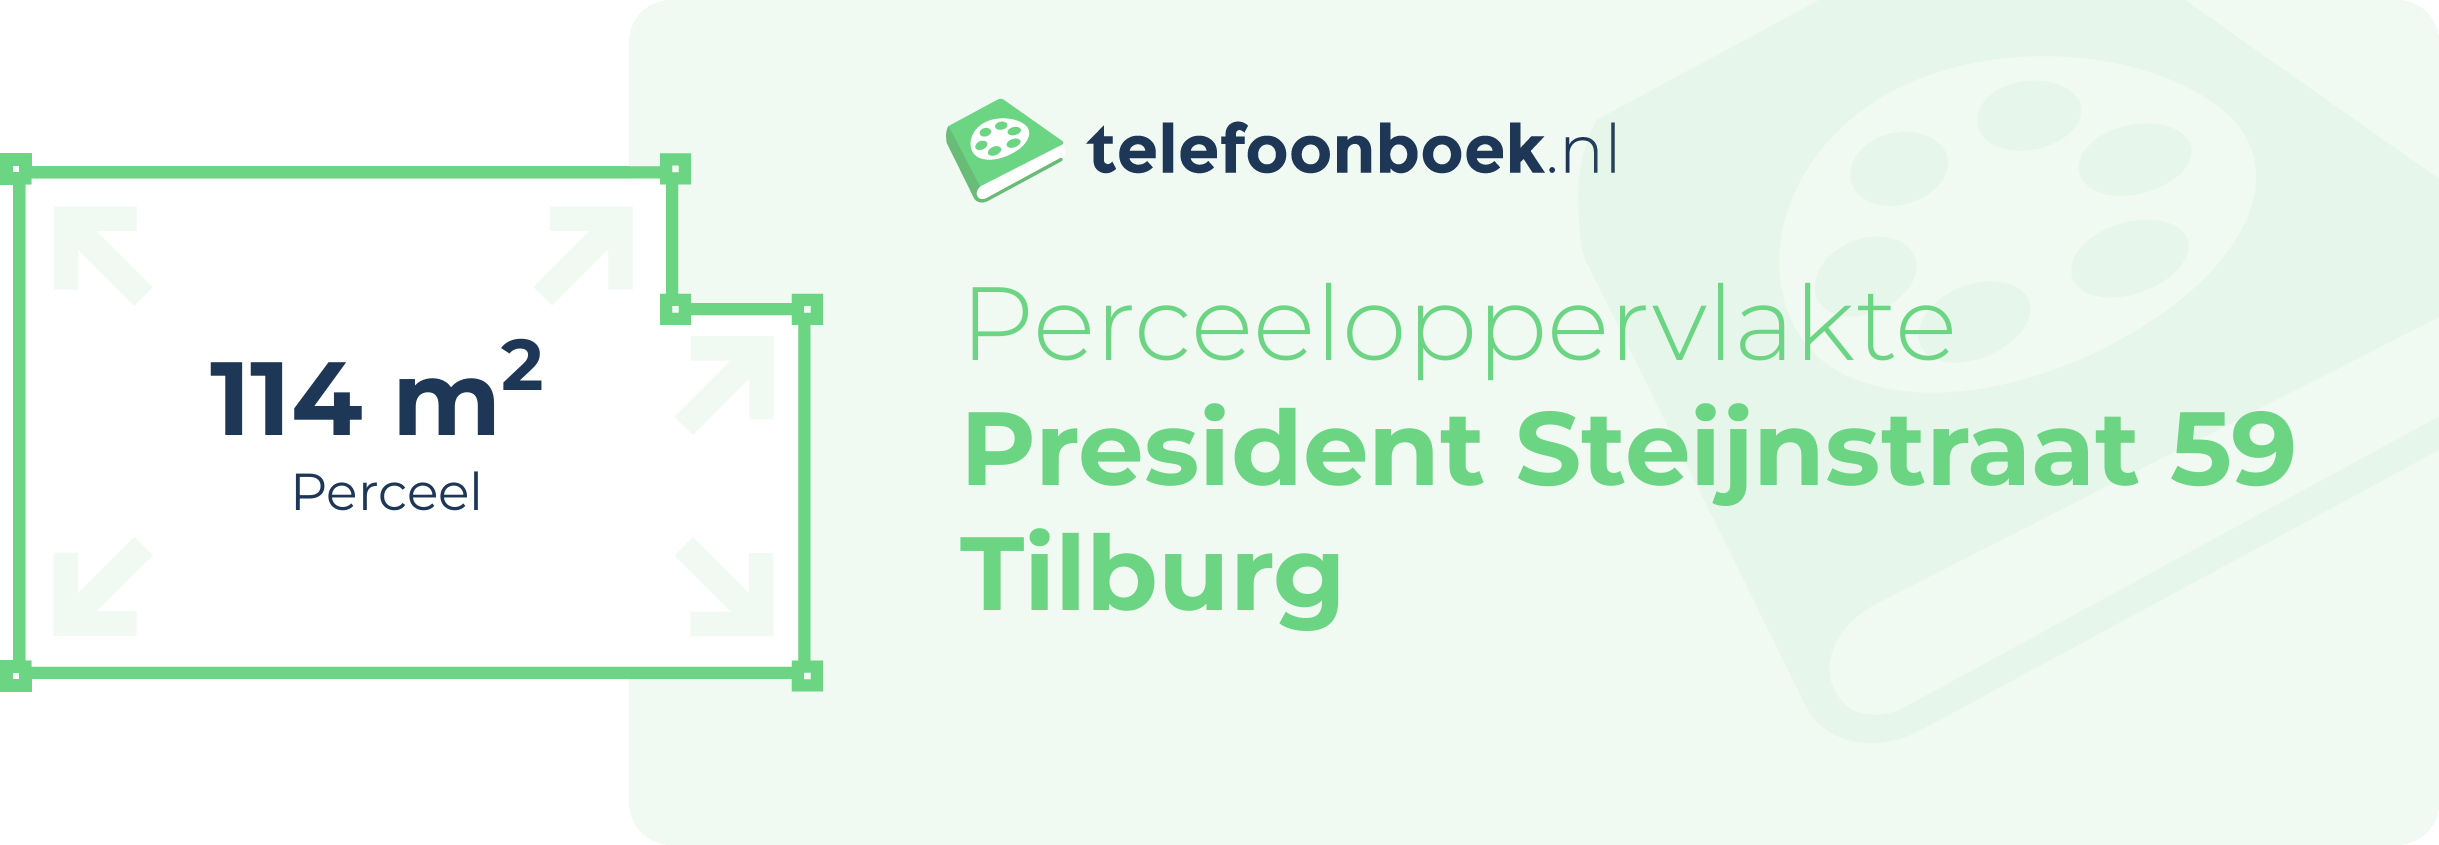 Perceeloppervlakte President Steijnstraat 59 Tilburg